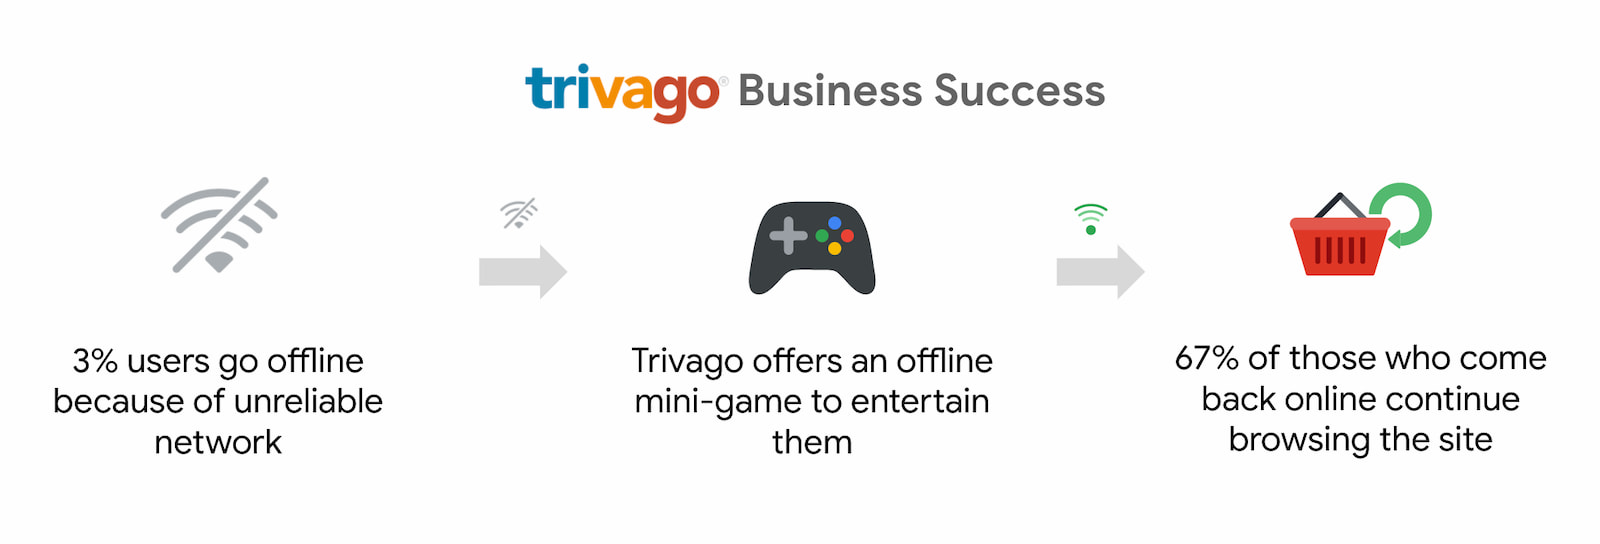 وشهدت Trivago زيادة بنسبة 67% في عدد المستخدمين الذين عادوا إلى الاتصال بالإنترنت واستمروا في التصفح.